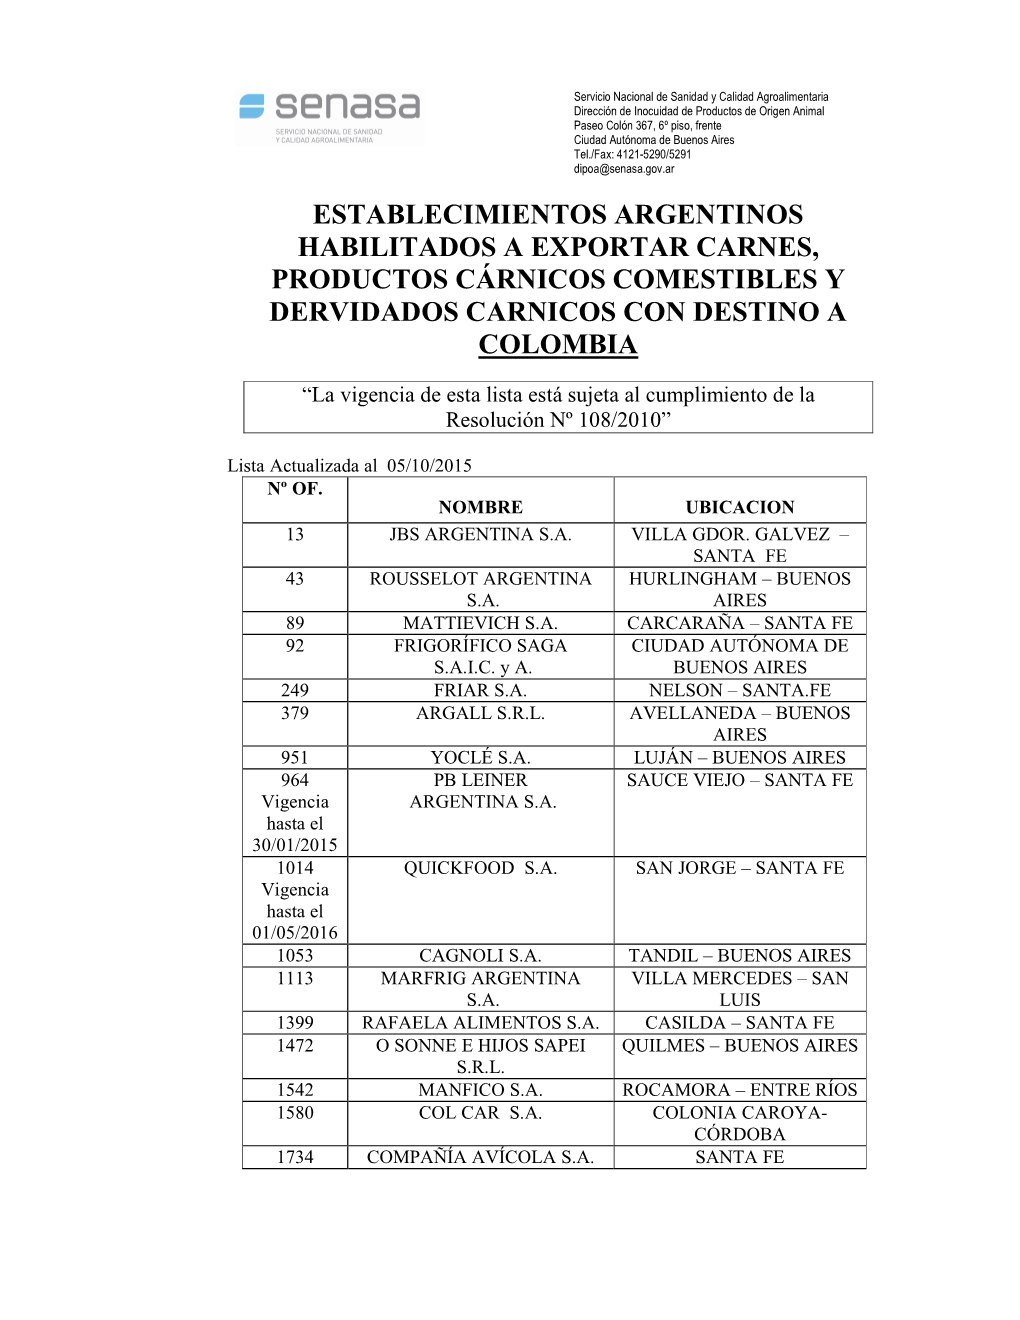 Establecimientos Argentinos Habilitados a Exportar Carnes, Productos Cárnicos Comestibles Y Dervidados Carnicos Con Destino a Colombia